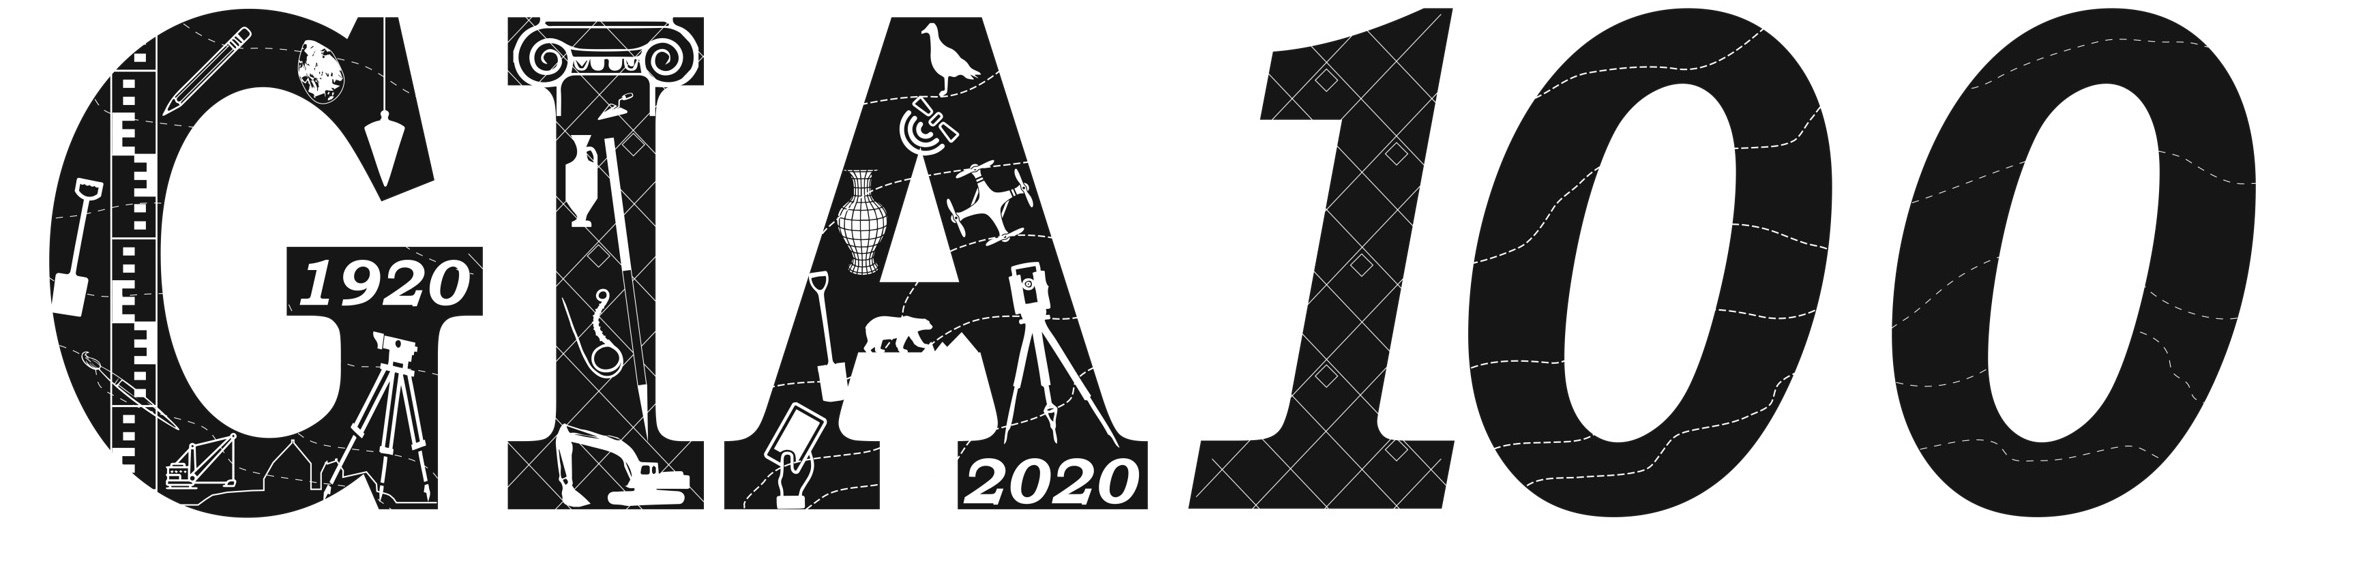 Gia centennial logo